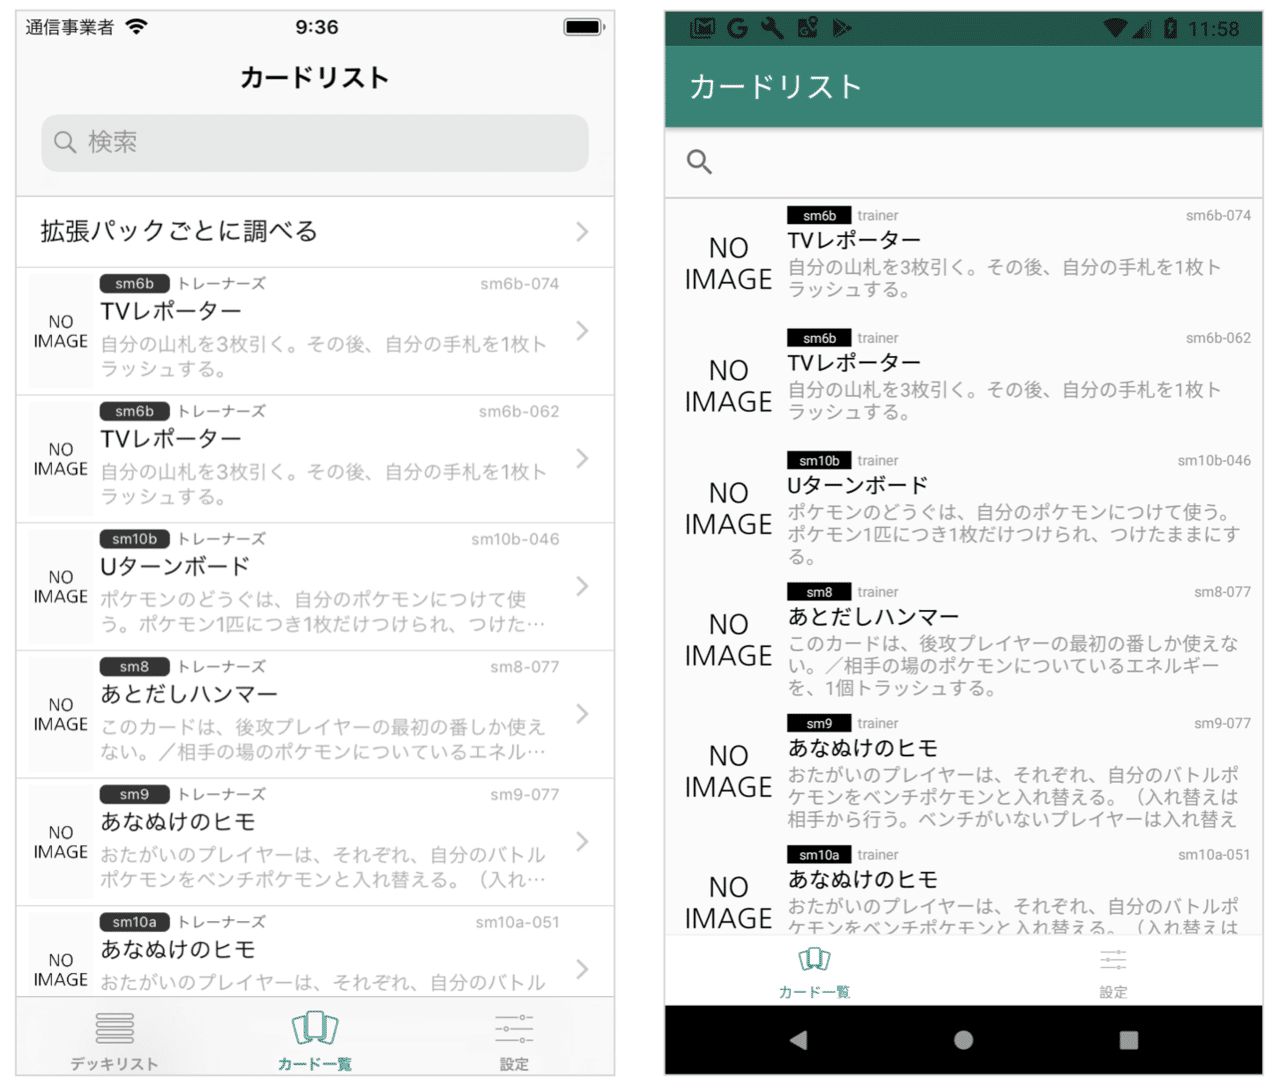 ポケカデッキ構築アプリ Ptcgnote V1 0 9をリリースしました Kenji Wada さくさん Note